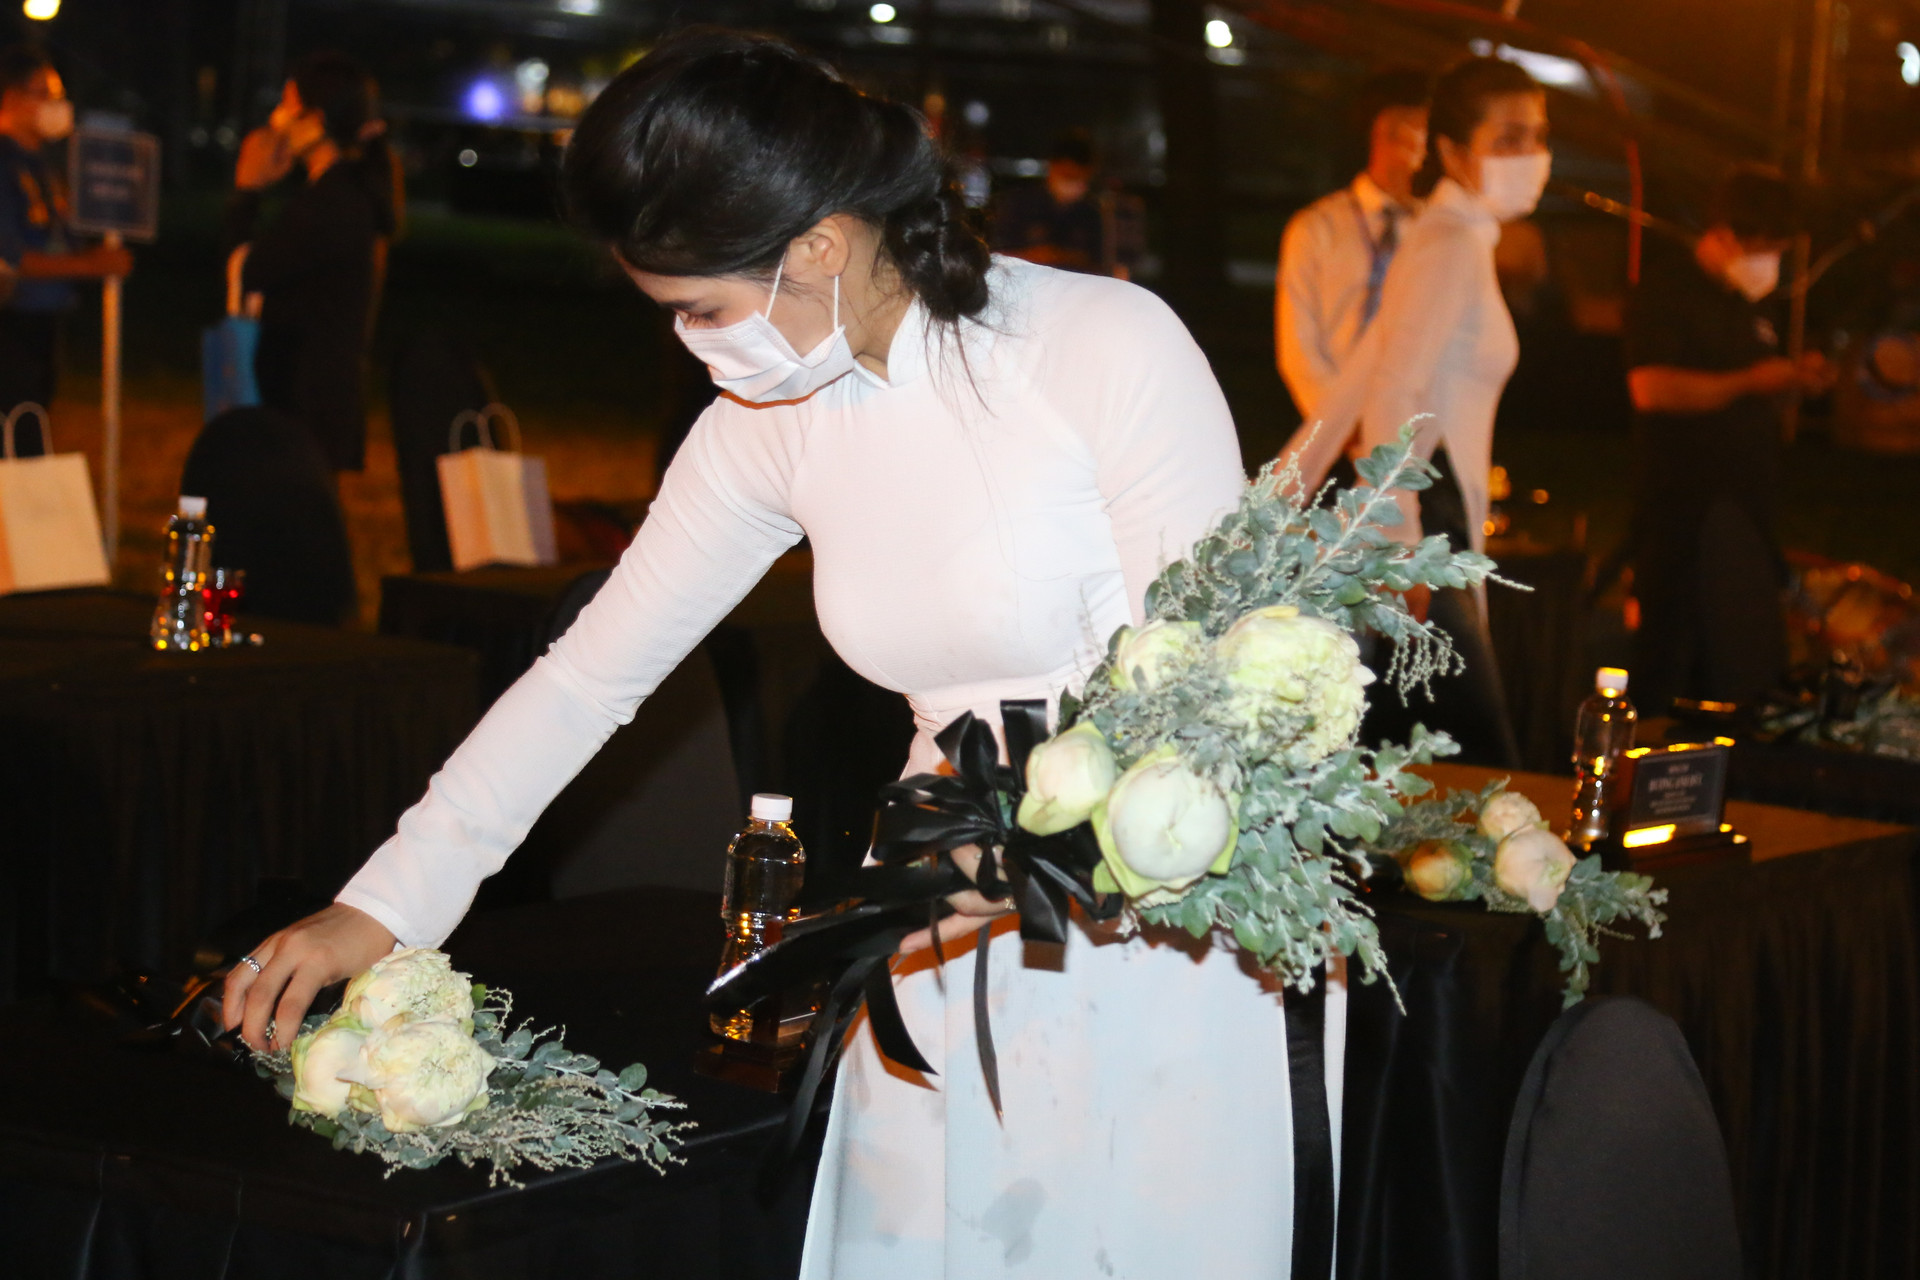 Những cành hoa trắng được đặt lên bàn các đại biểu nhằm phục cho nghi thức buổi lễ thêm trang trọng.